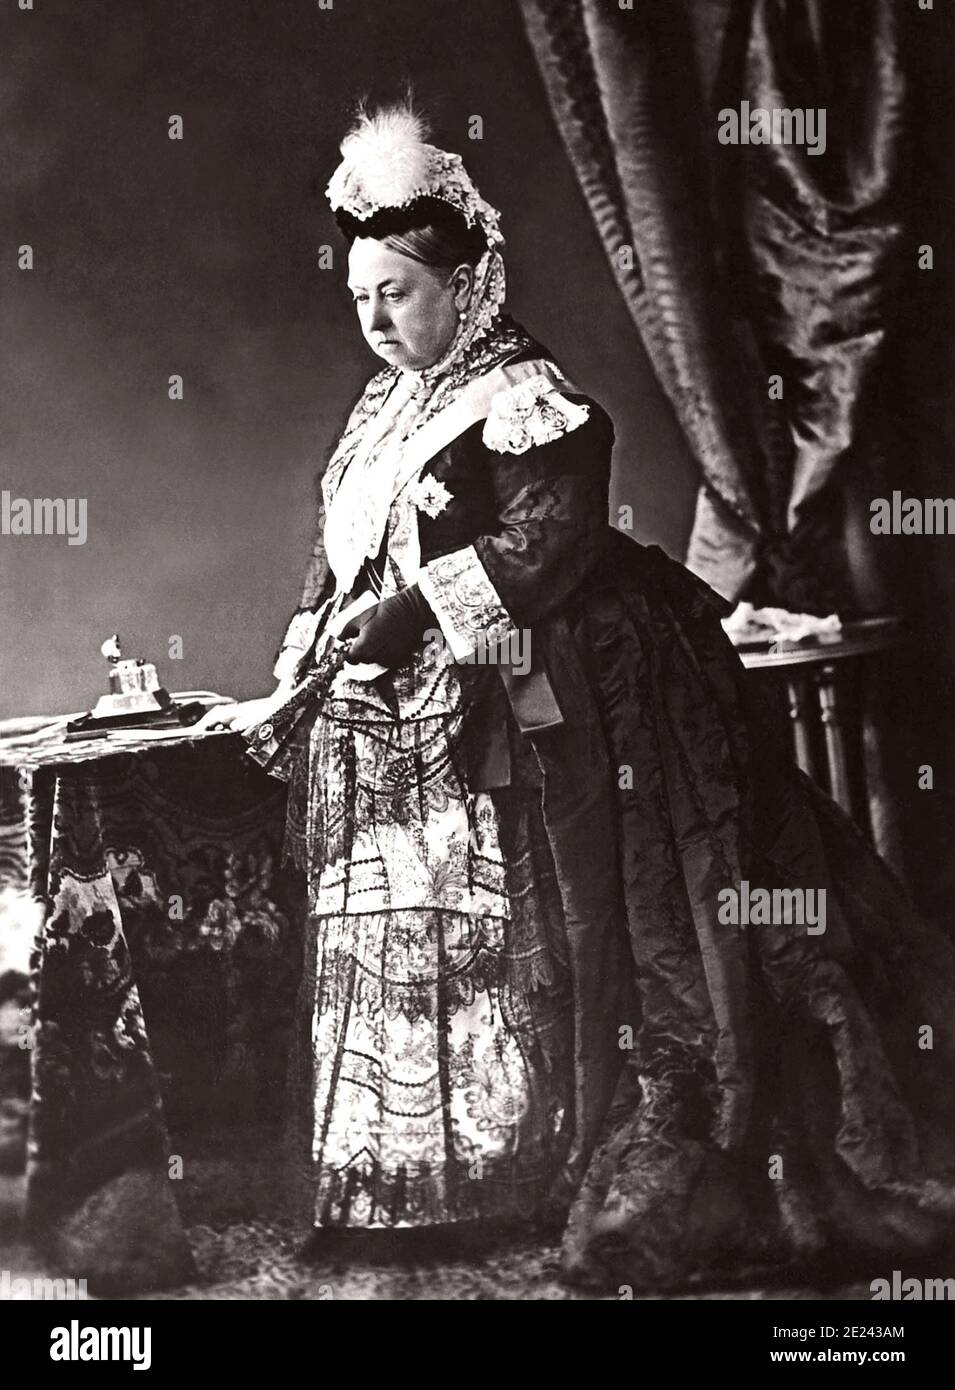 Königin Victoria, hier in einem Portrait für Ihr Jubiläum im Jahre 1887 gezeigt, regierten Großbritannien für 63 Jahre, 7 Monate und 2 Tage. Stockfoto